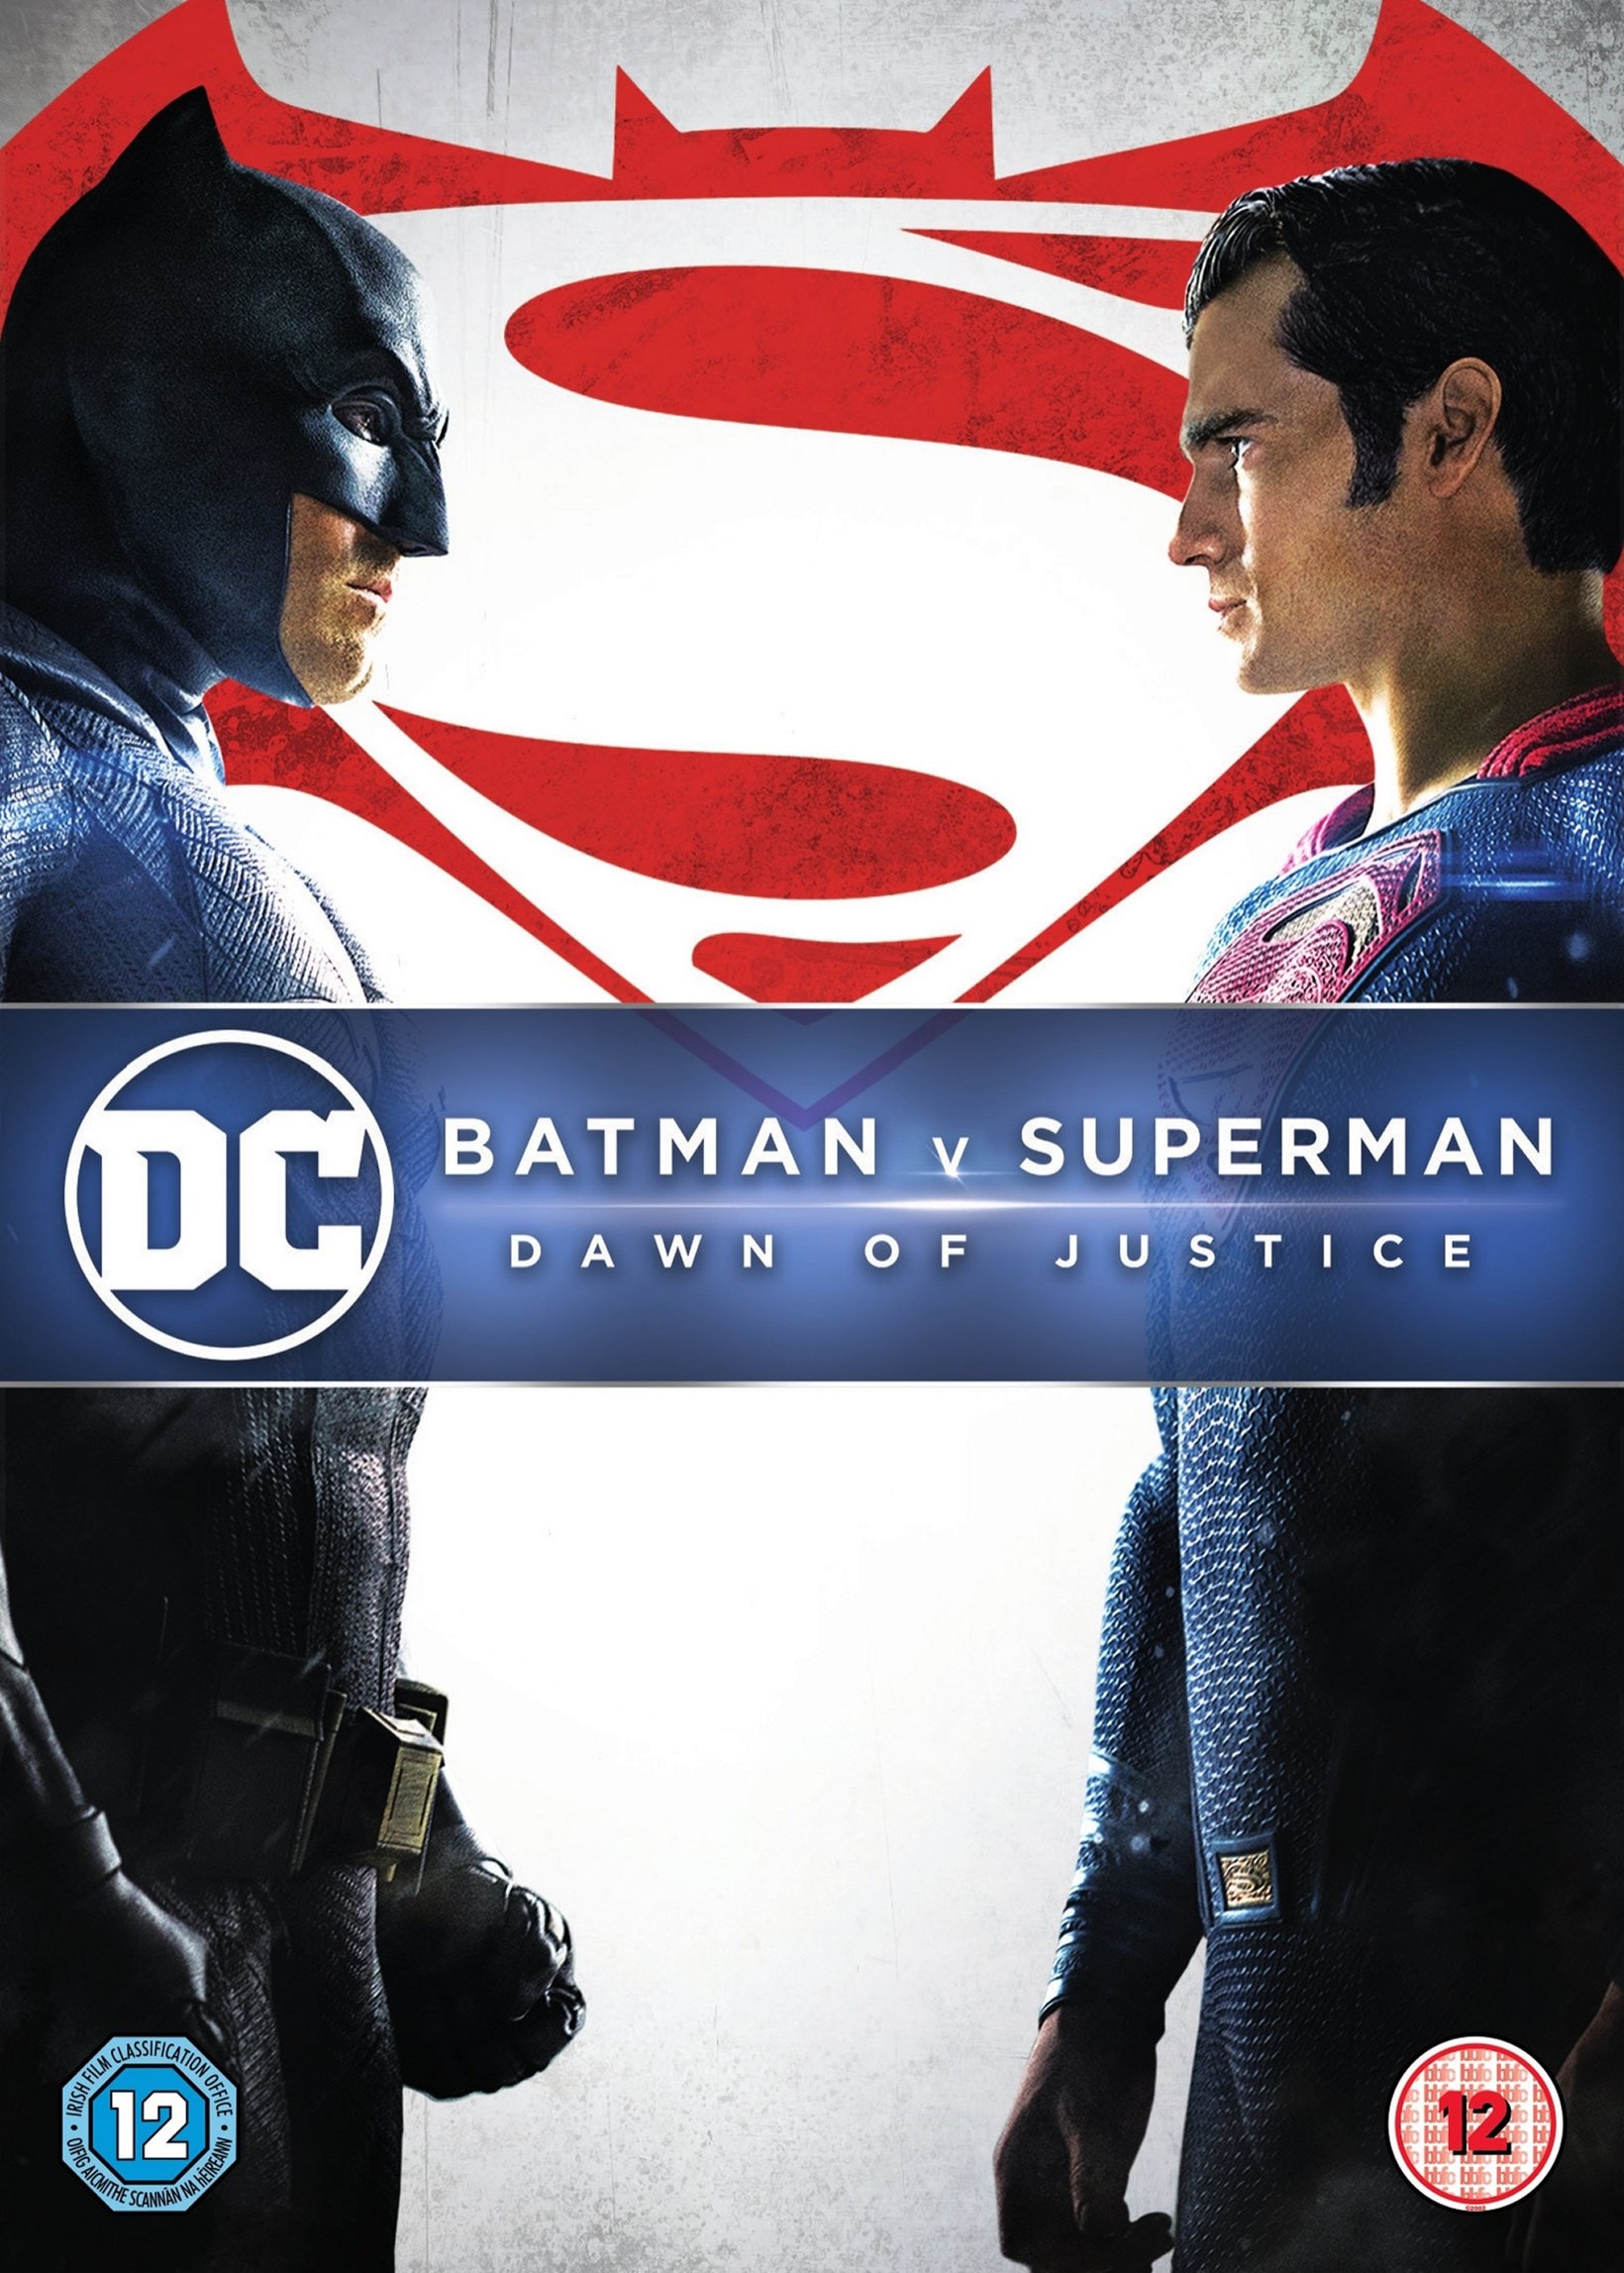 Batman V Superman - Dawn of Justice